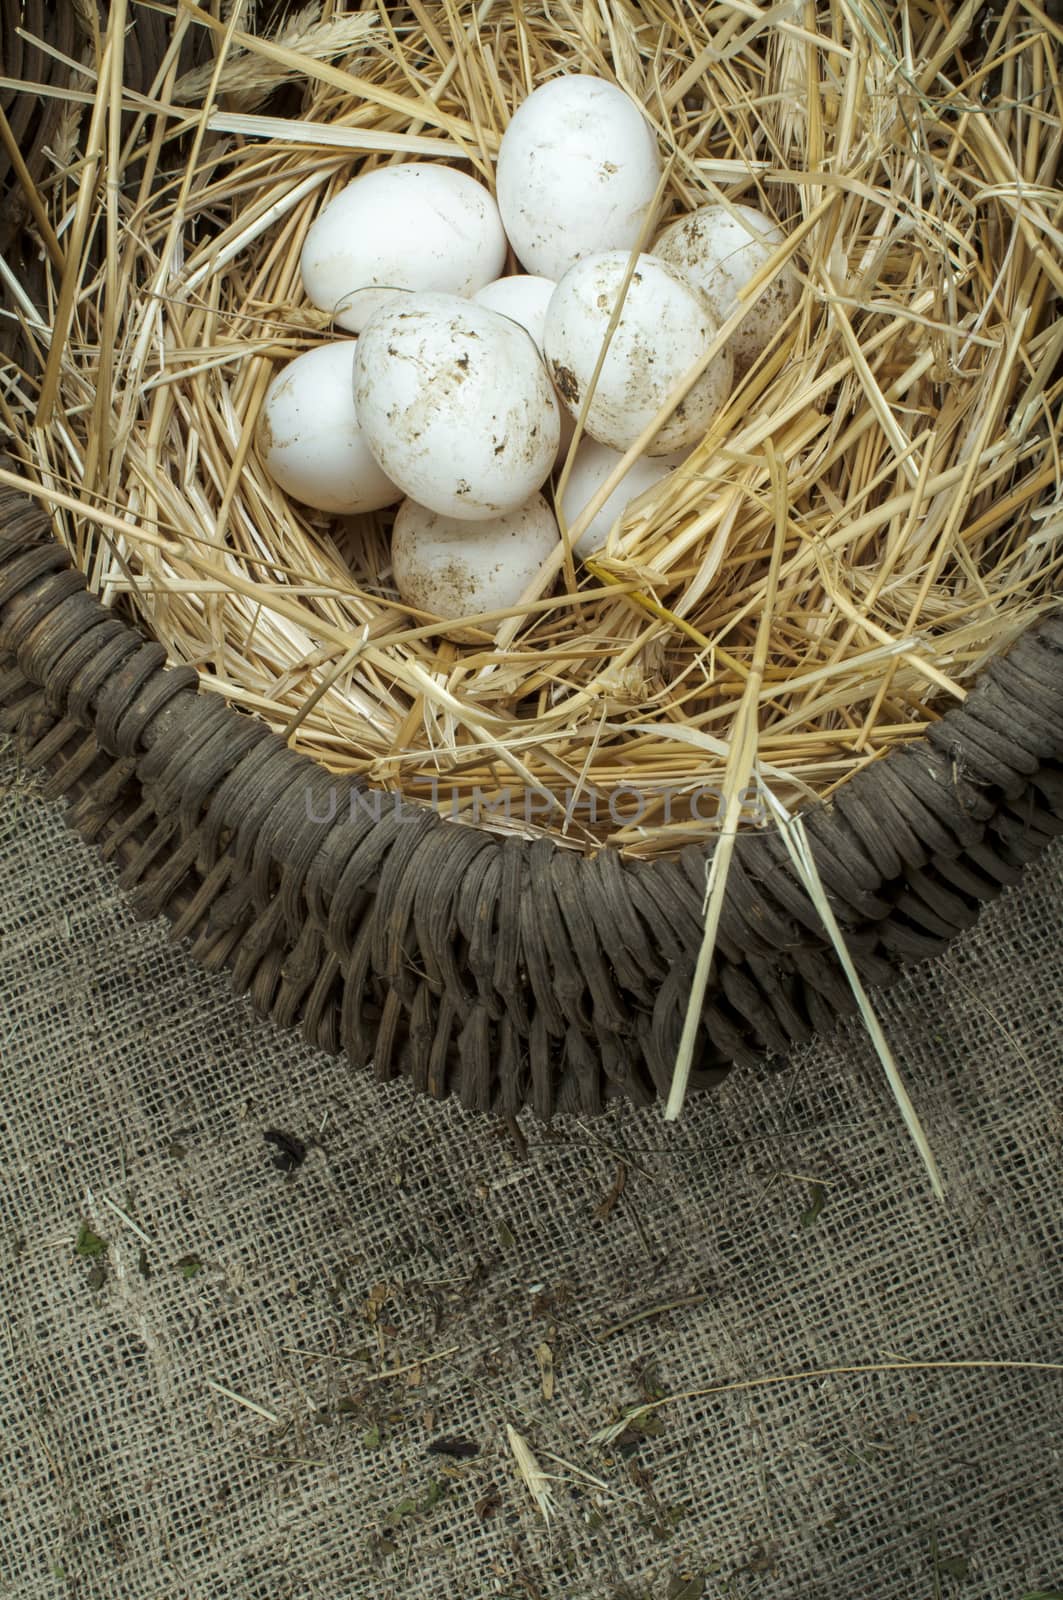 Organic white domestic eggs in vintage basket by deyan_georgiev